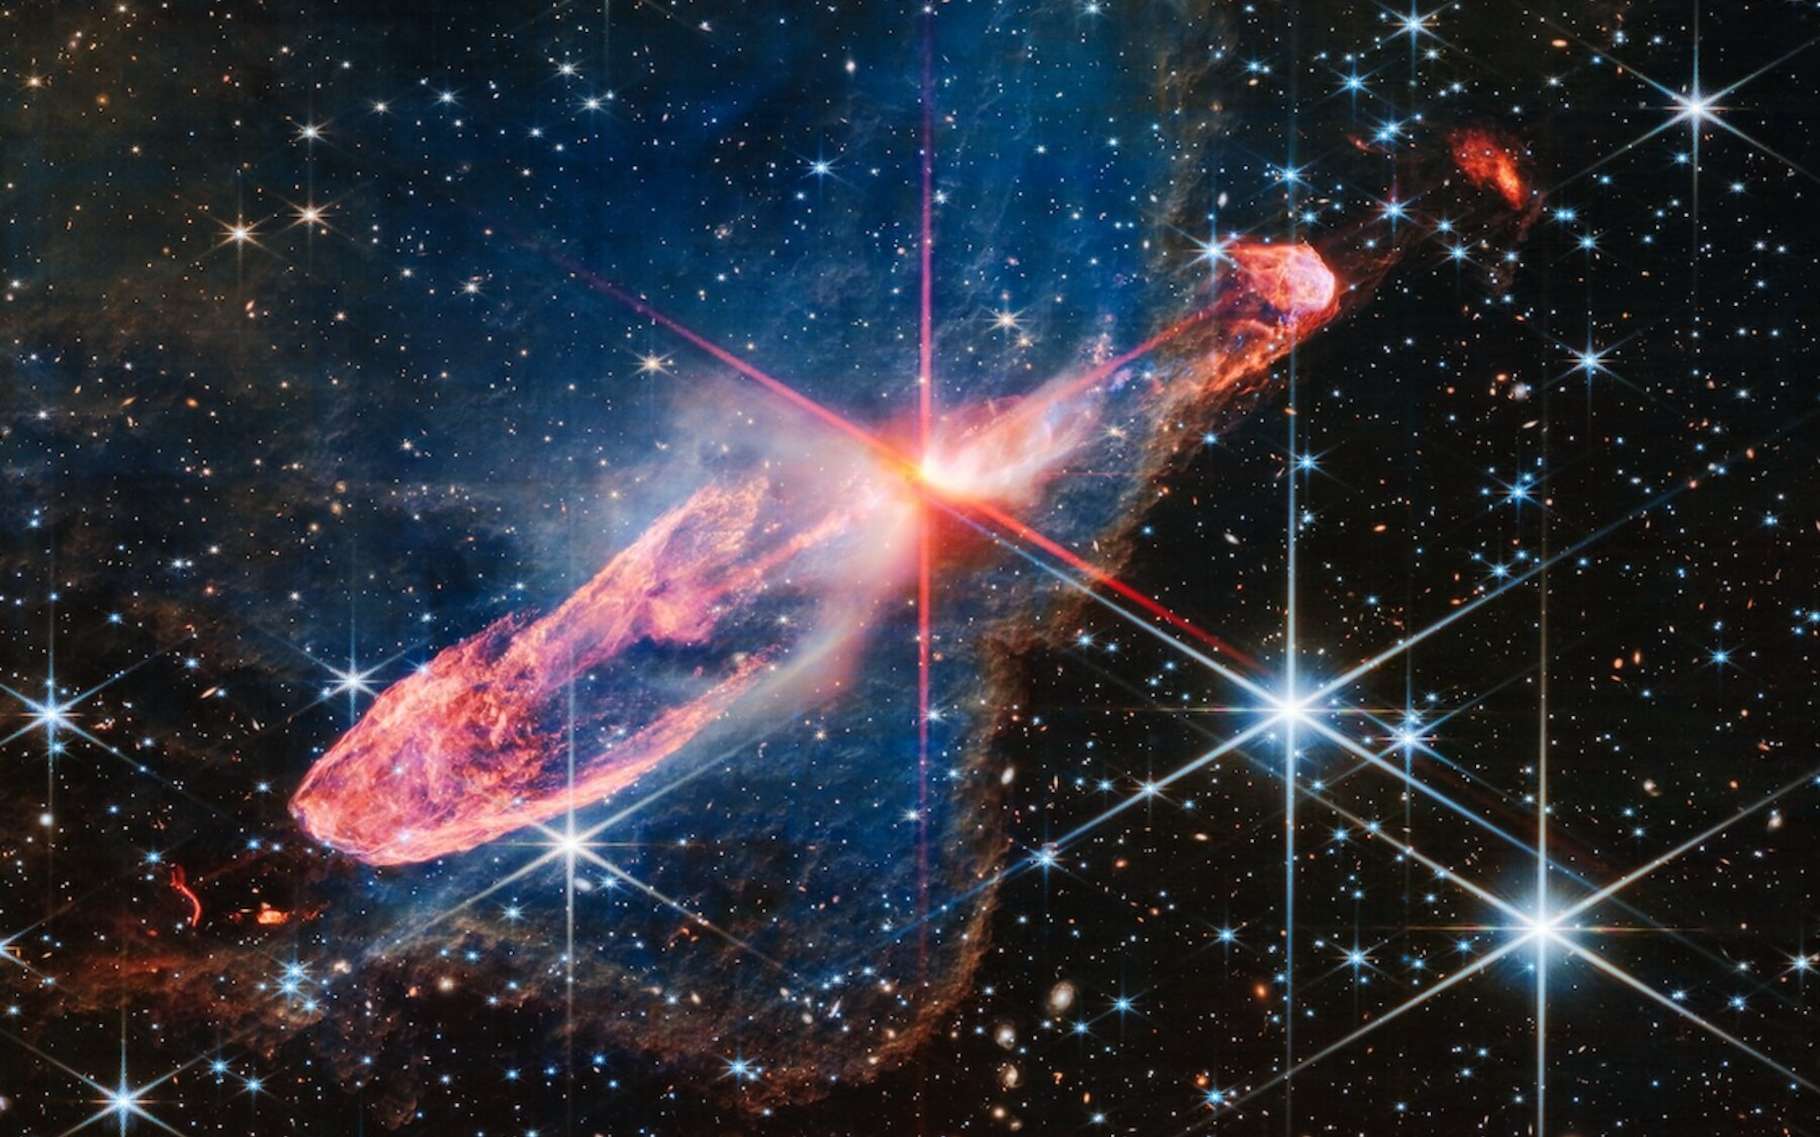 Le télescope James-Webb révèle que les premières galaxies étaient plus massives et matures que prévu